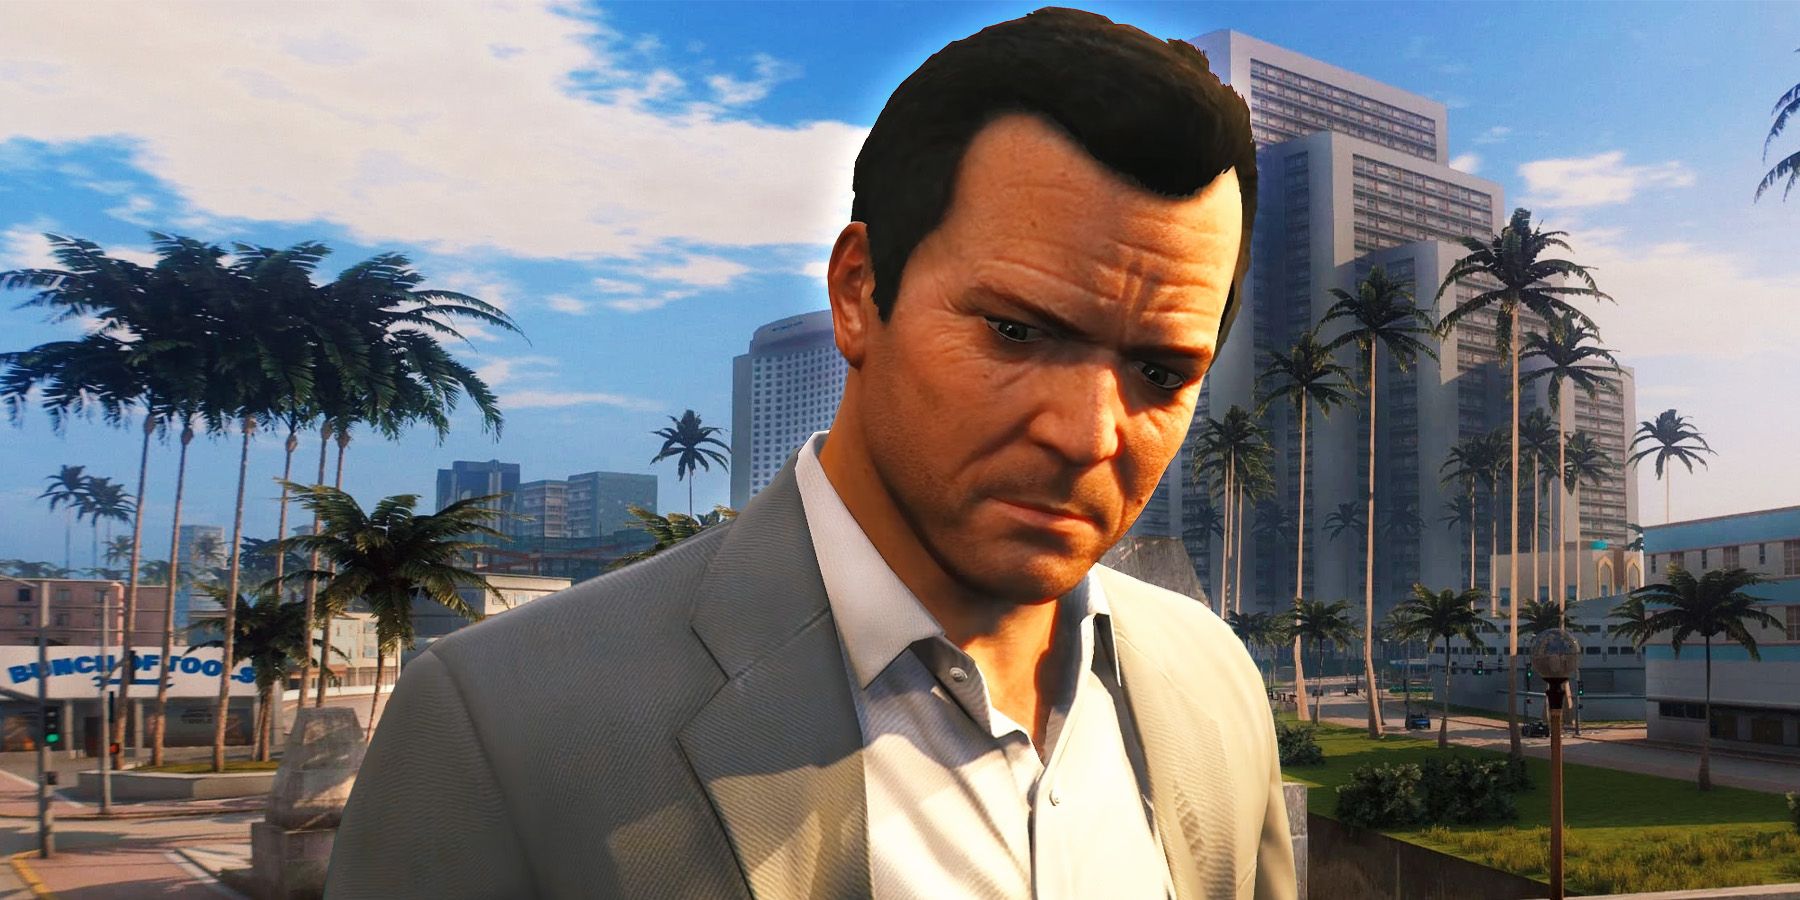 Grand Theft Auto VI™